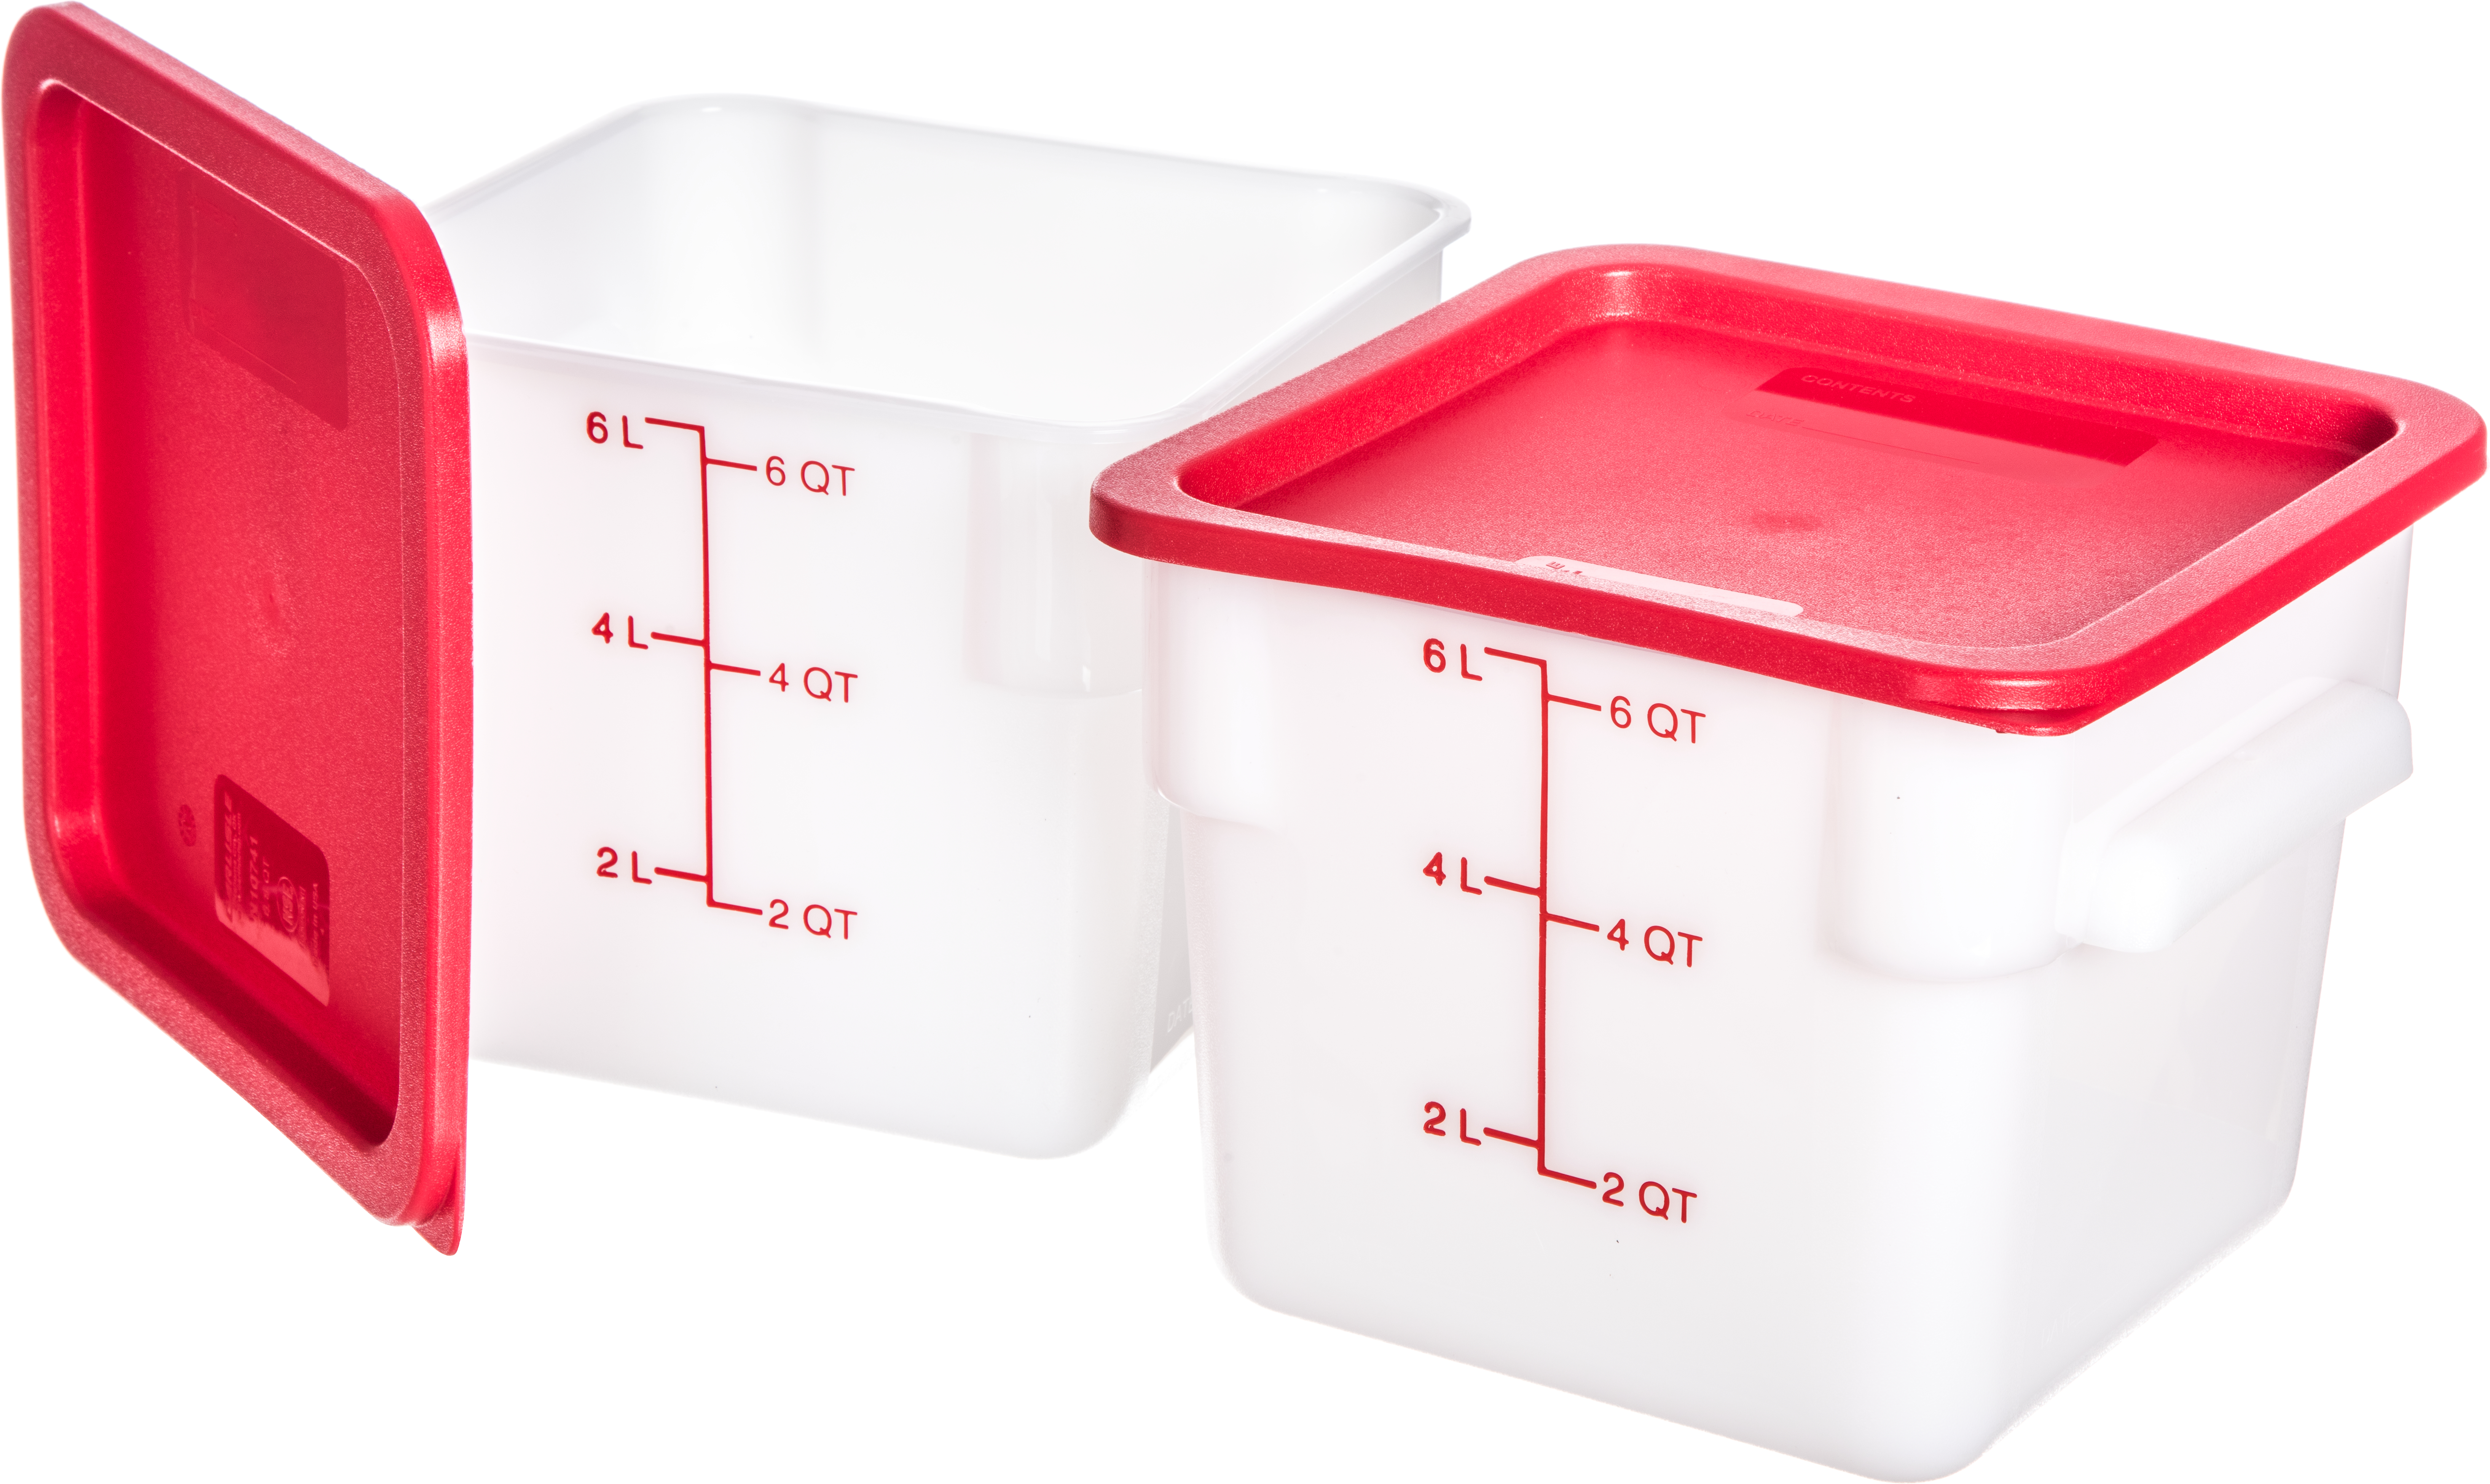 4-Quart Square White Food Storage Container